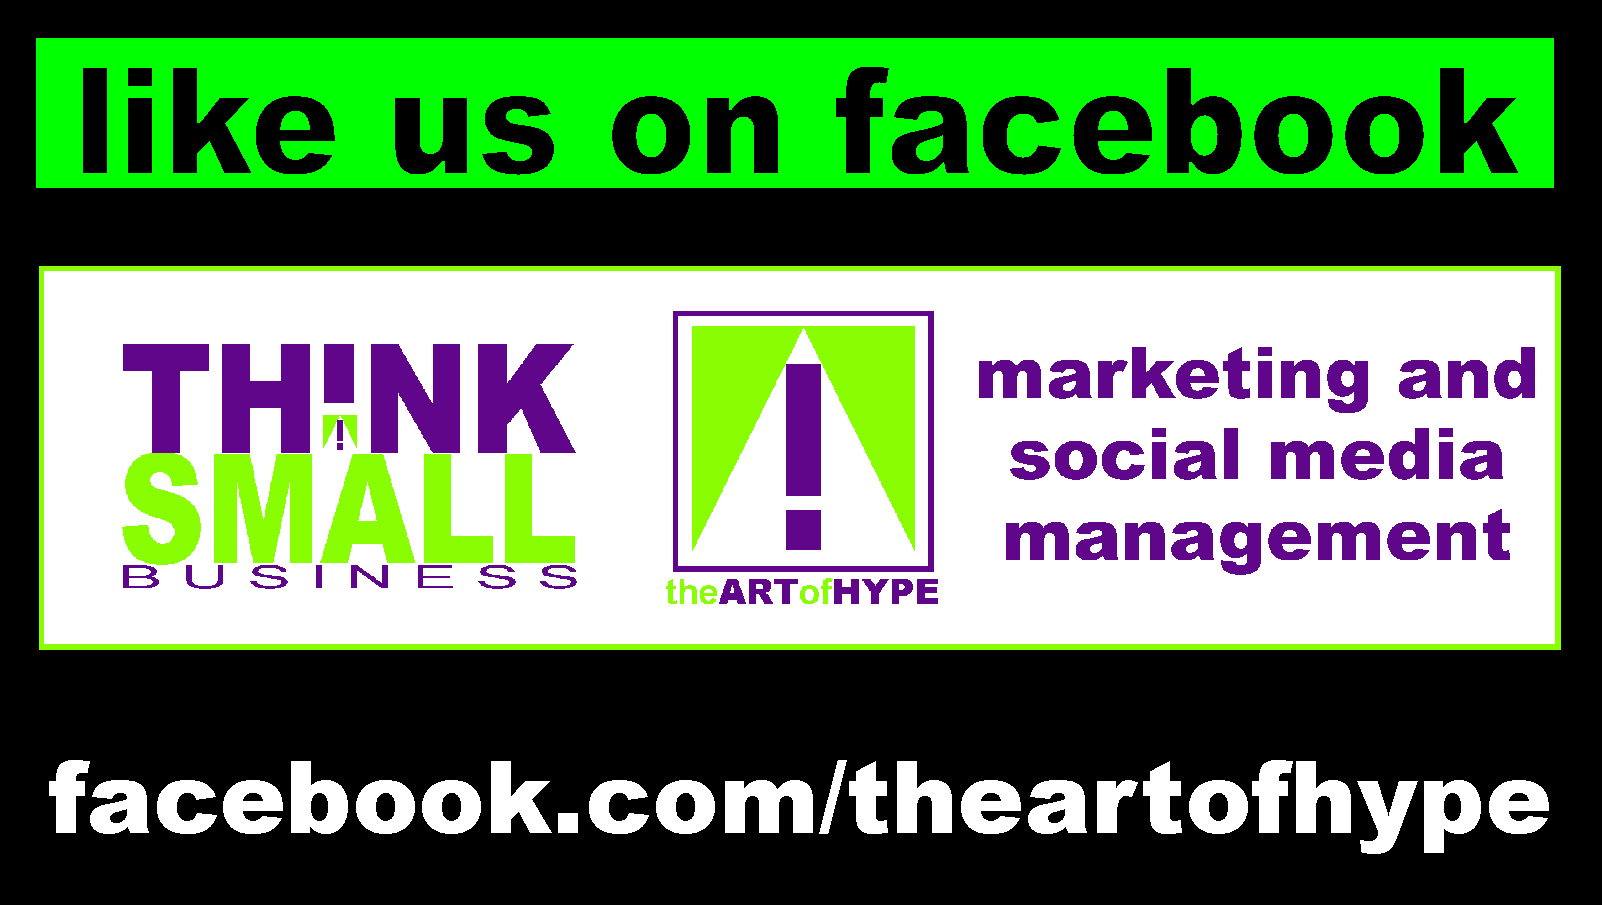 PLEASE like us on Facebook